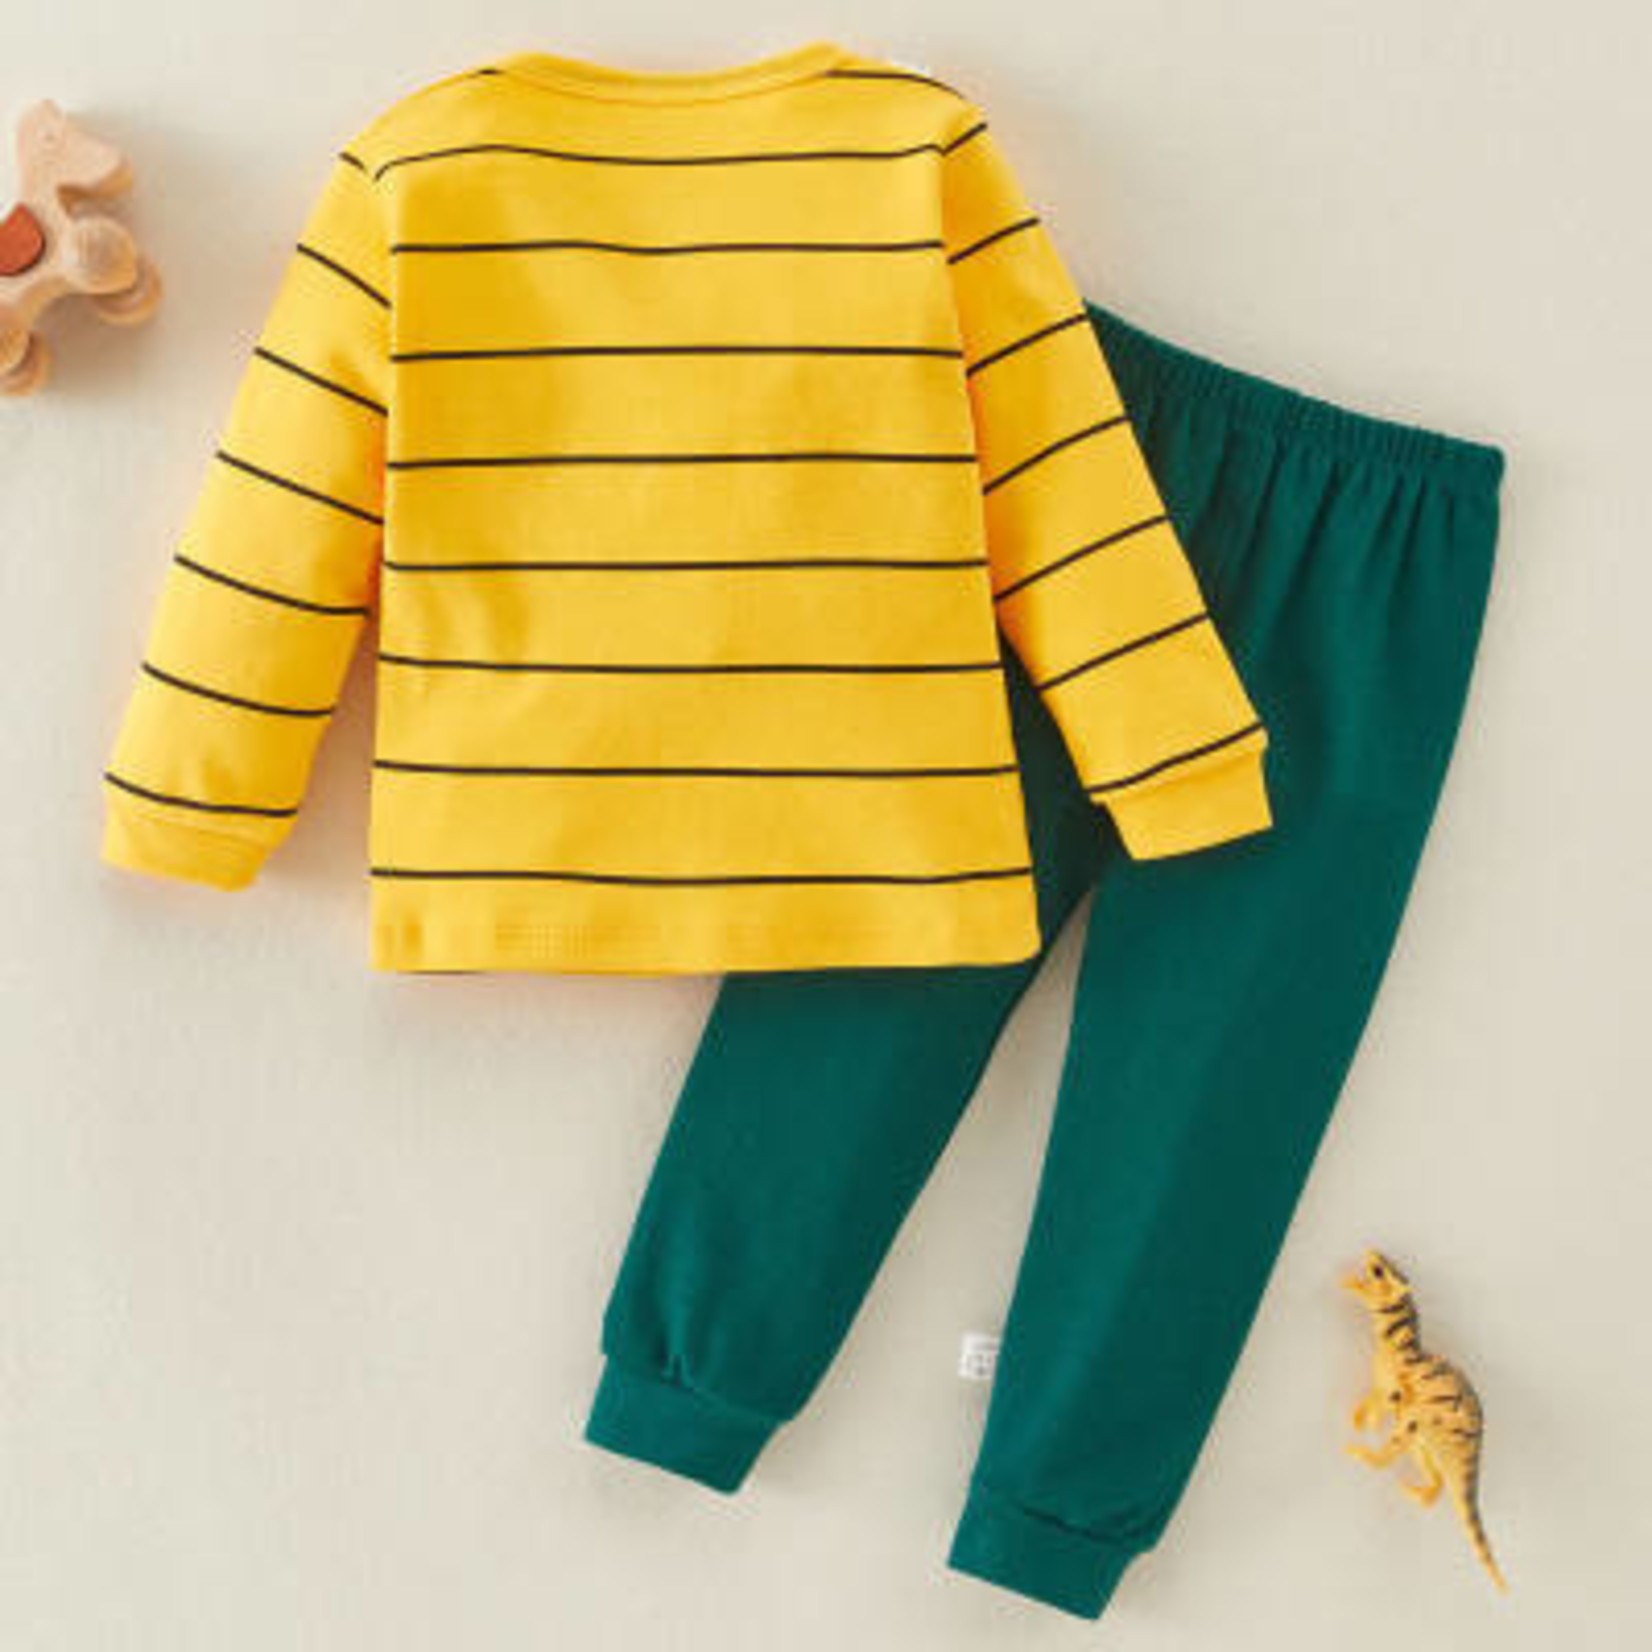 Riolio Yellow with Stripes Pajamas-2 piece set